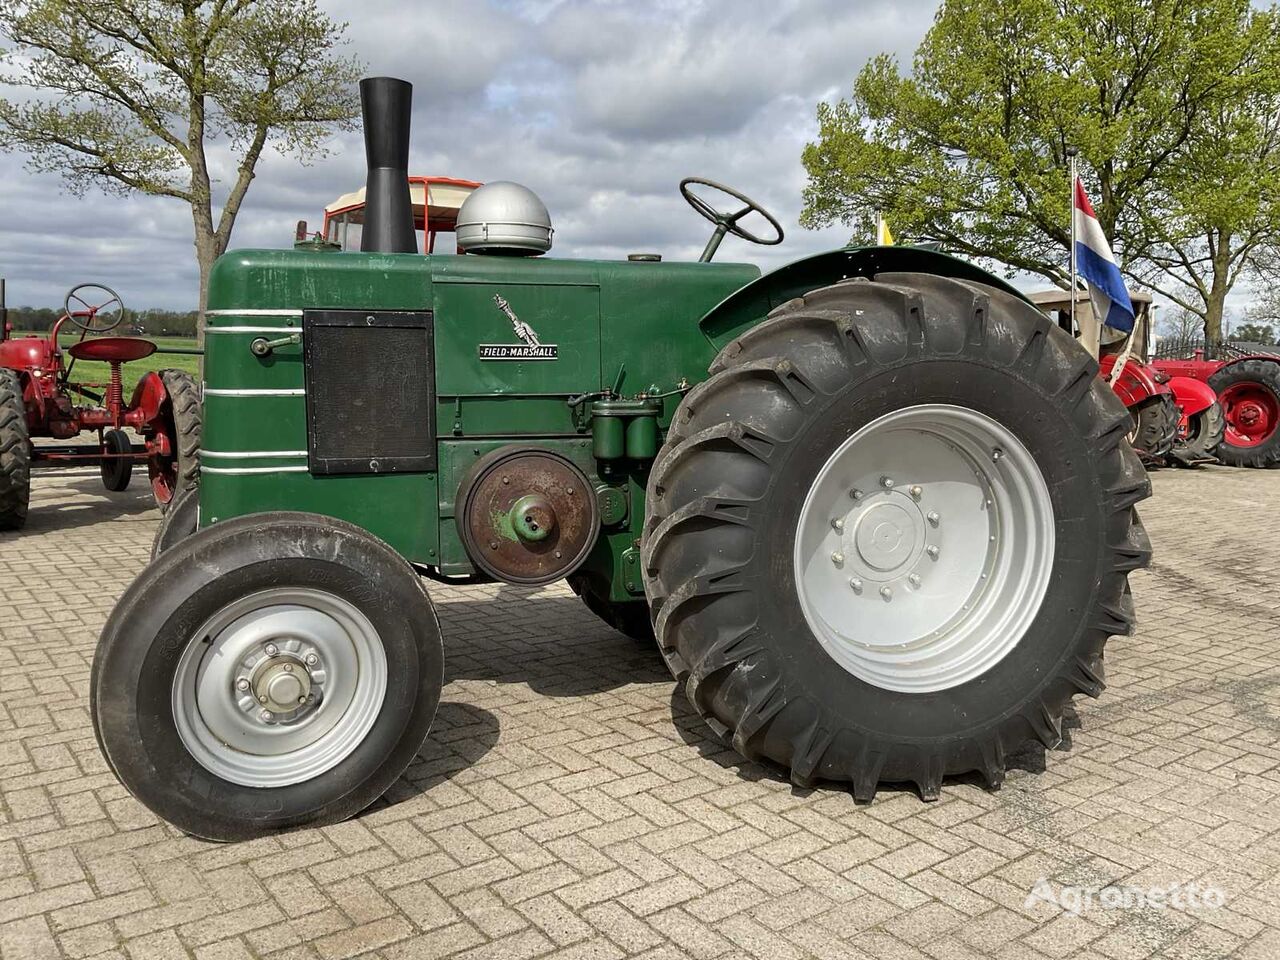 Field marshall Serie 3 Oldtimer tractor tractor de ruedas